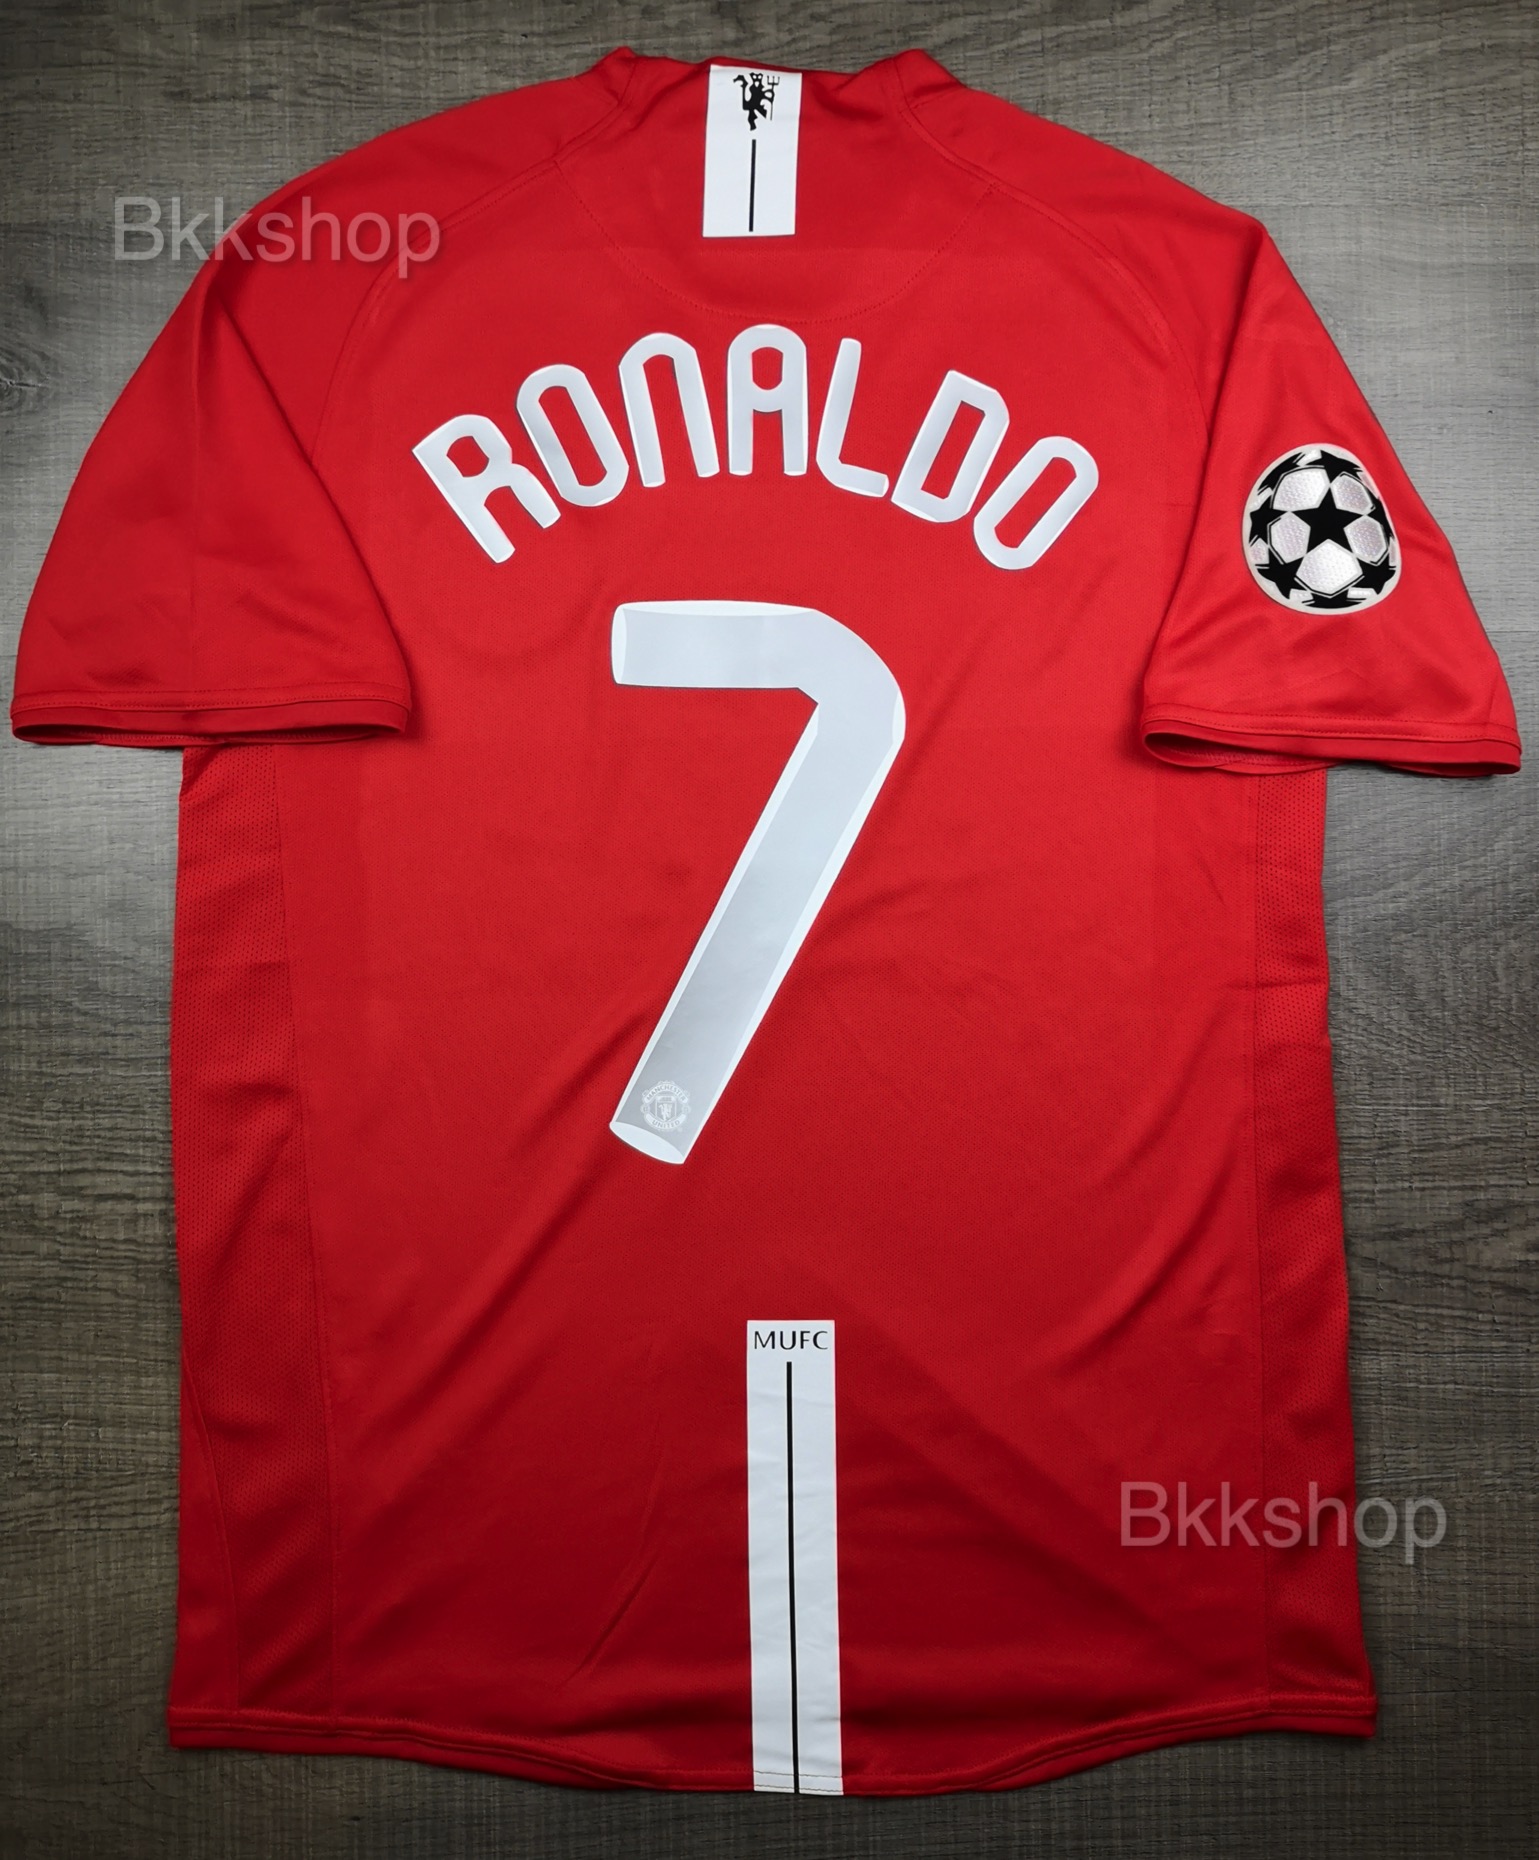 เสื้อบอล ย้อนยุค แมนยู เหย้า 2008-2009 Retro Manchester United Home พร้อมเบอร์ชื่อ 7 Ronaldo และอาร์มแชมเปี้ยนลีค